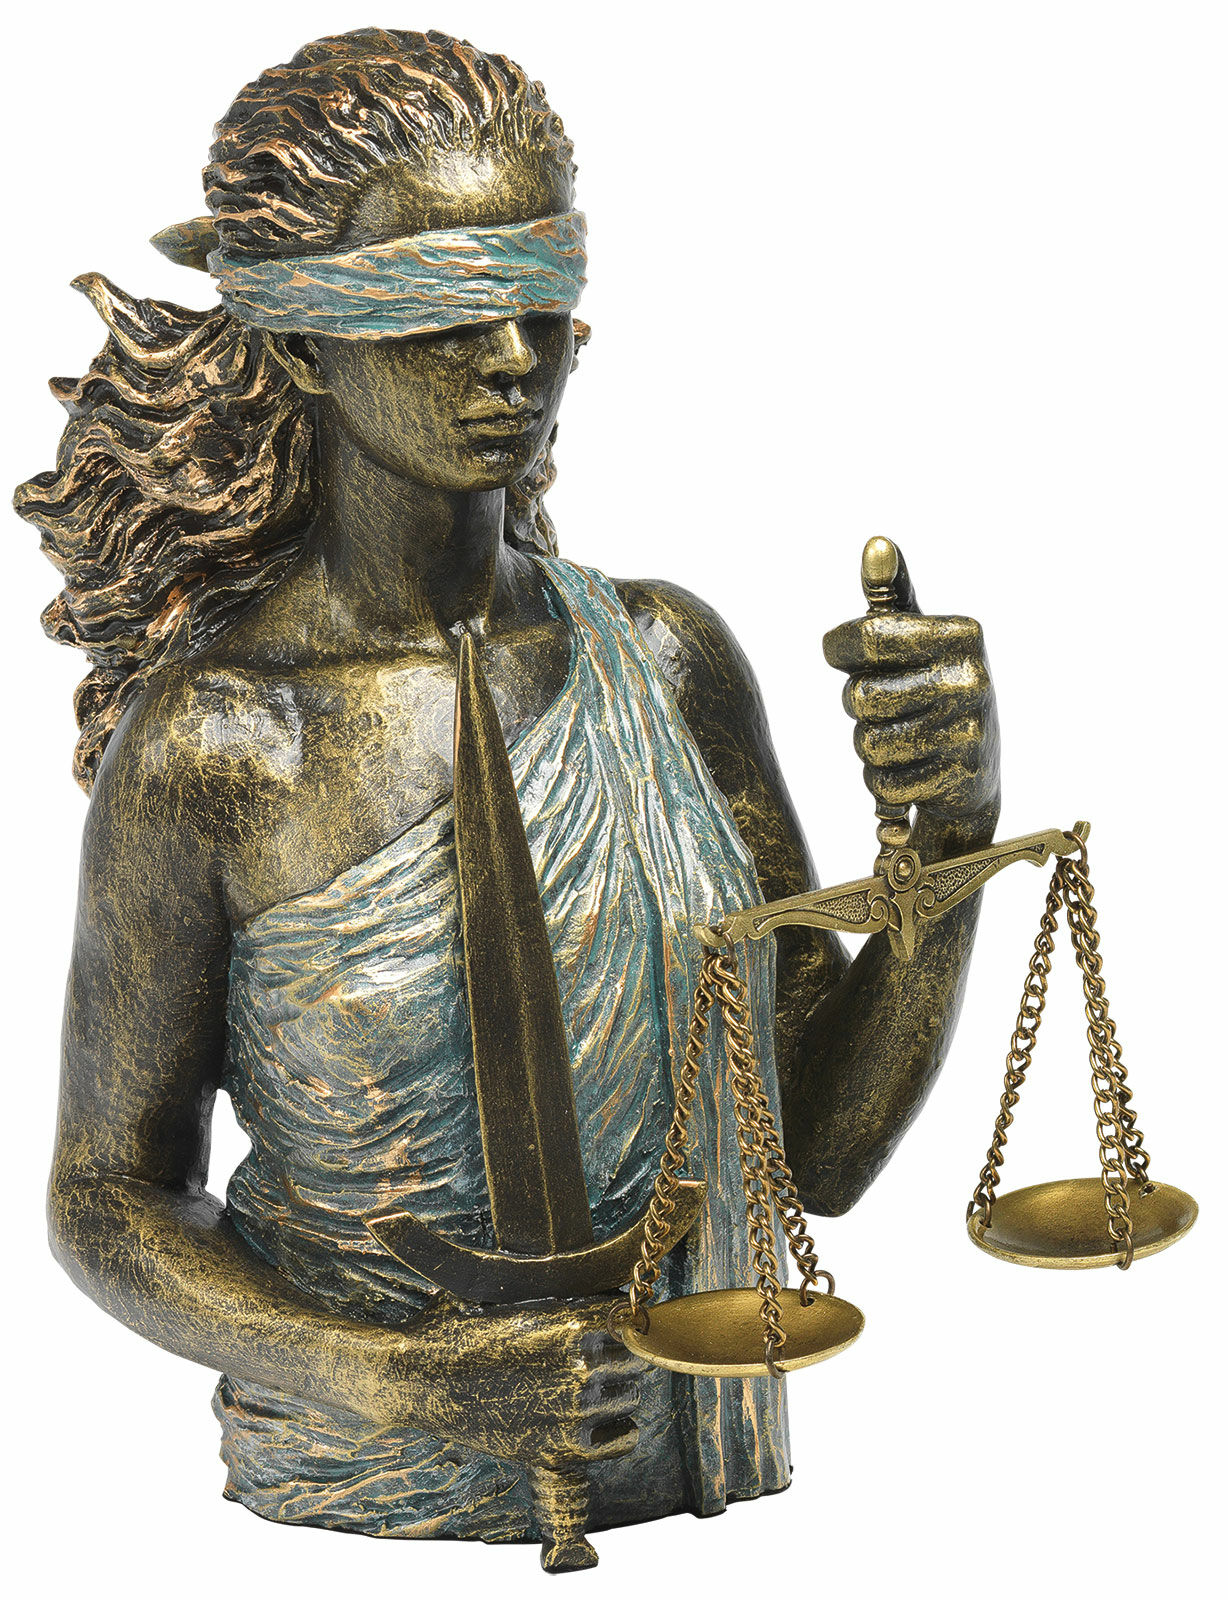 Skulptur "Lady Justice", kunstig sten von Angeles Anglada